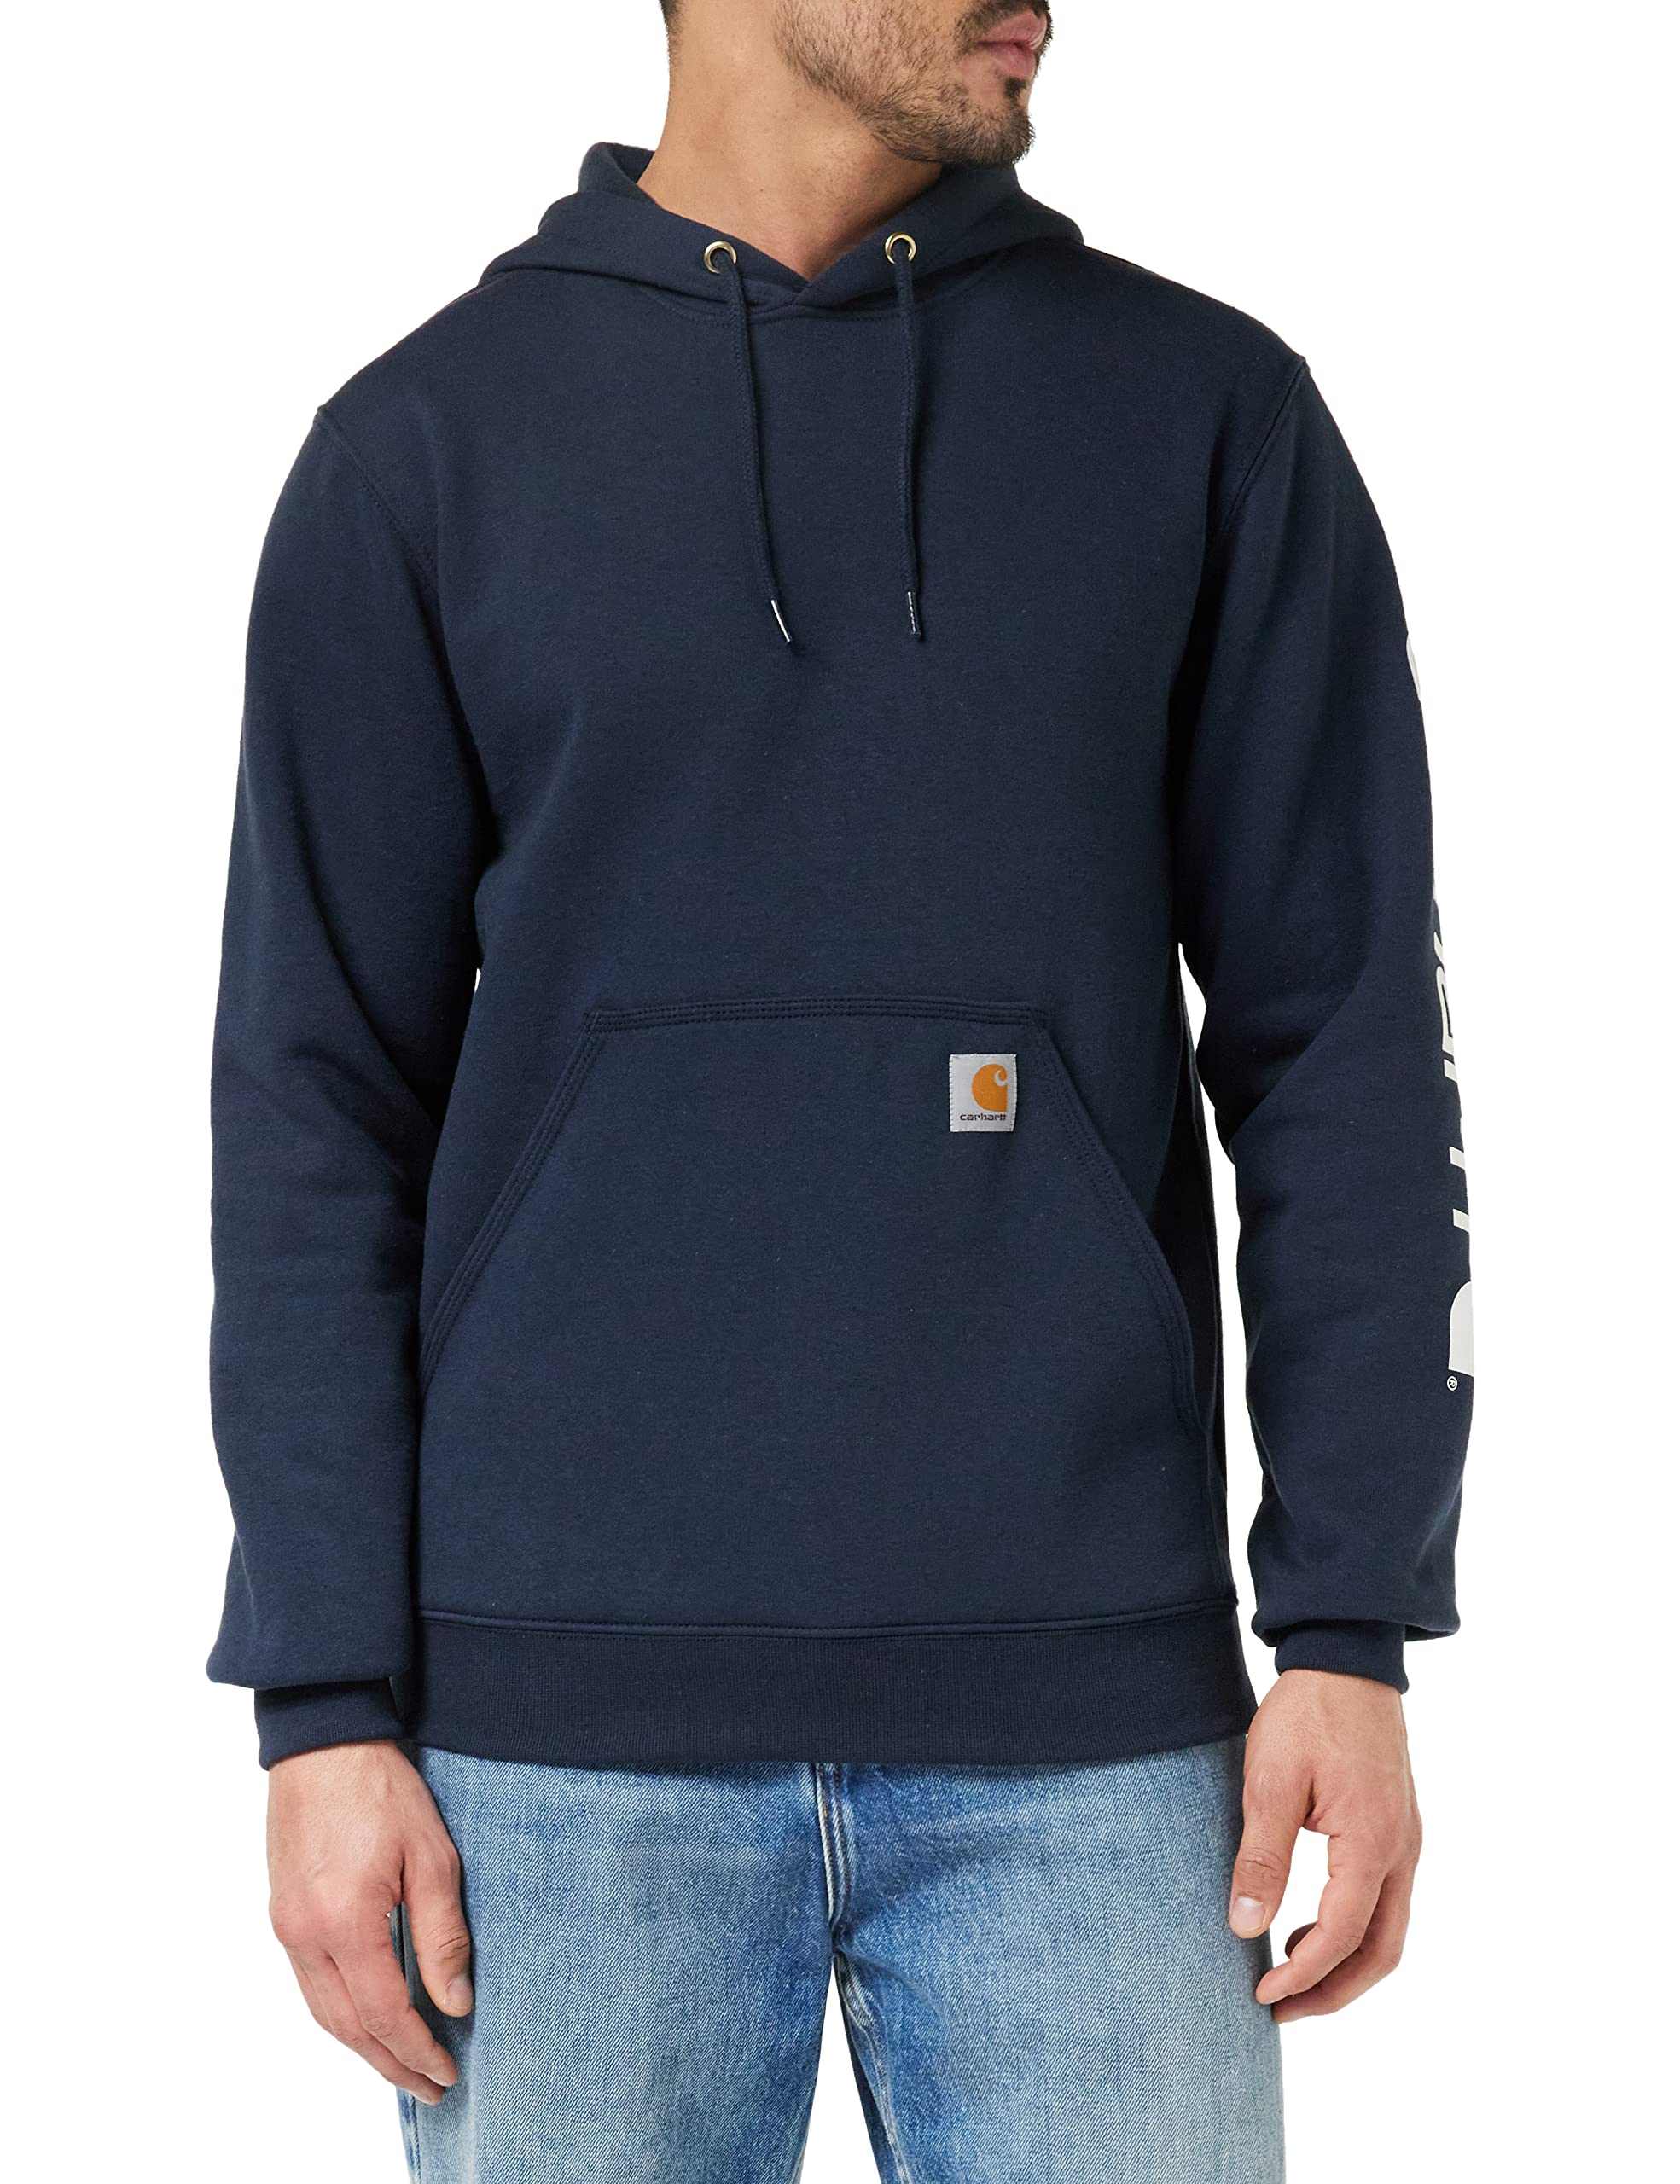 Carhartt, Herren, Weites, mittelschweres Sweatshirt mit Logo-Grafik auf dem Ärmel, Marineblau neu, M